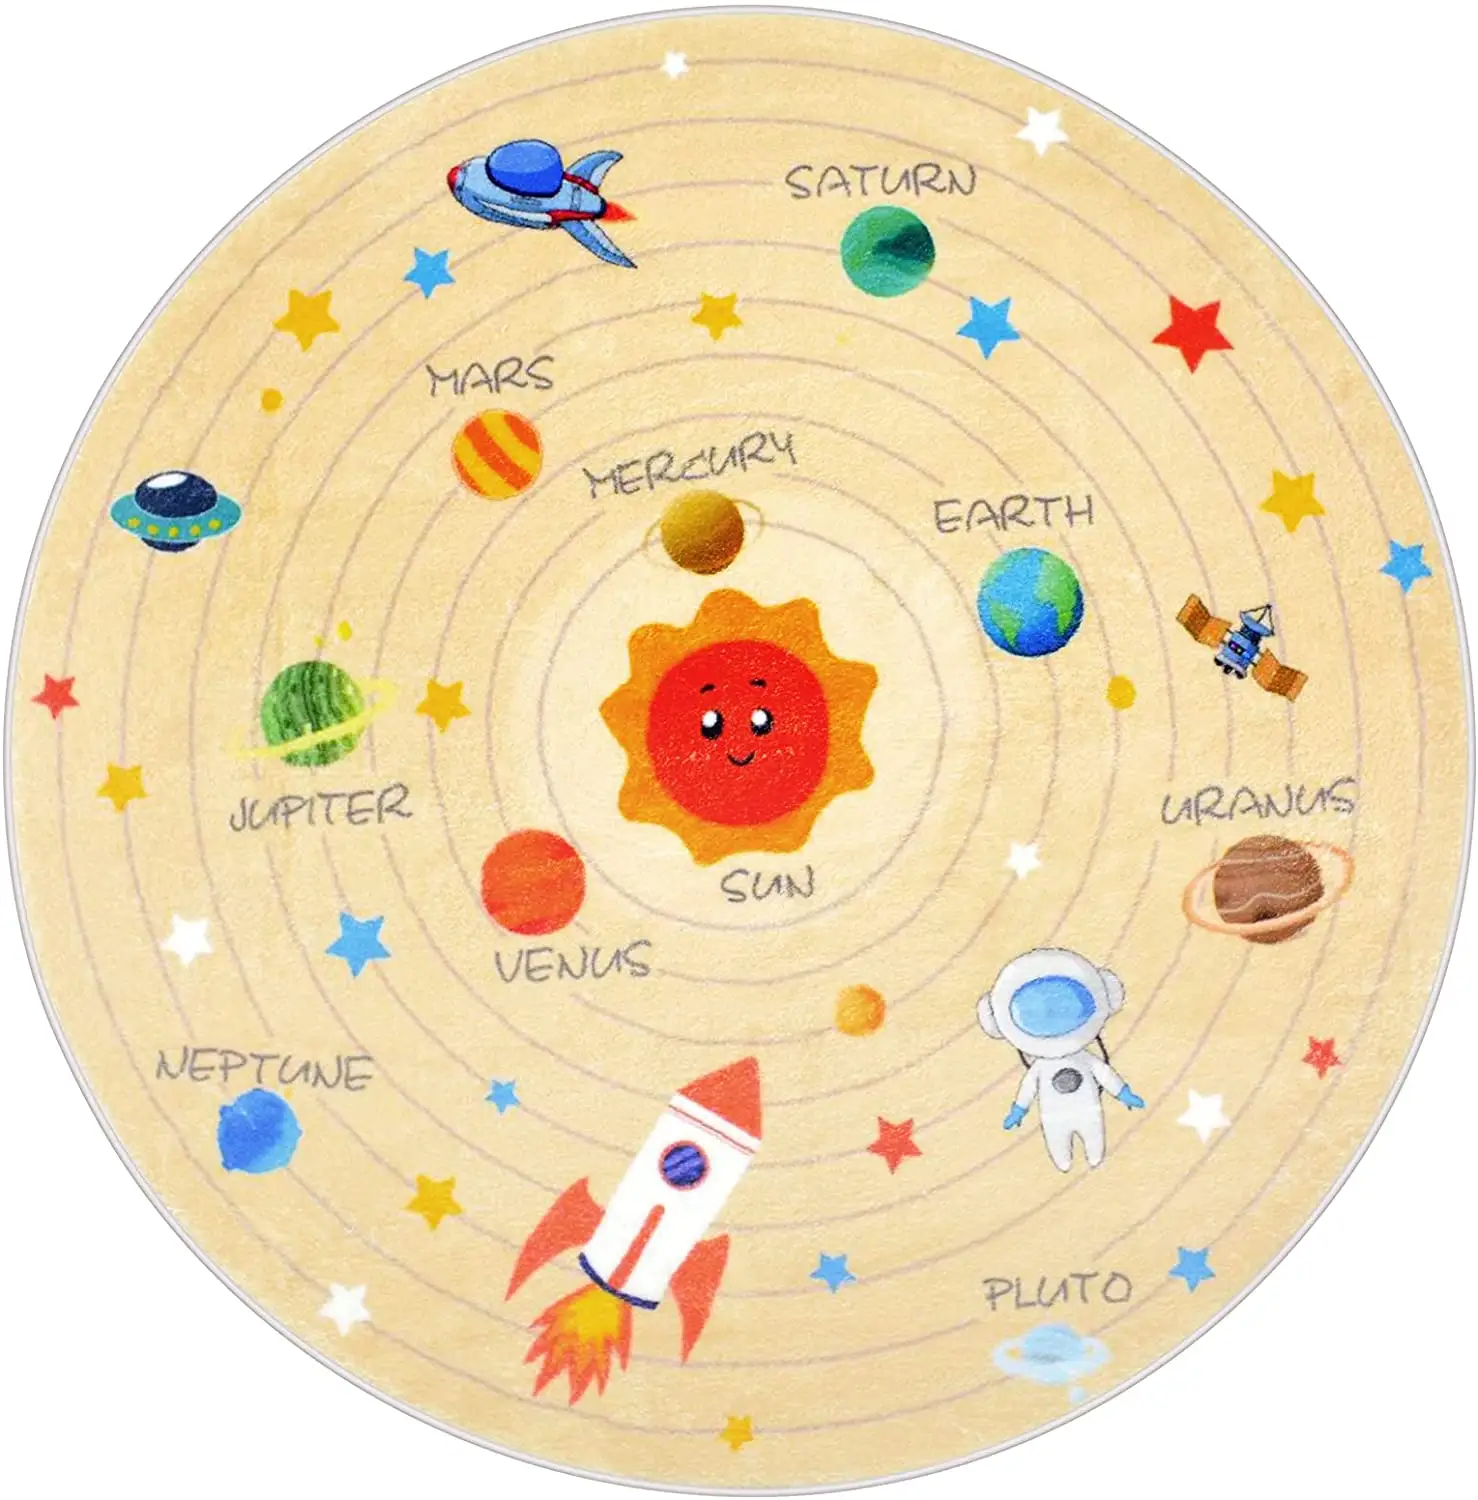 Outer Space Kids Play Gebied Tapijt Zonnestelsel Tapijt Galaxy Planeten Sterren Spelen Mat Tapijt Voor Jongens Meisjes Educatief Leren